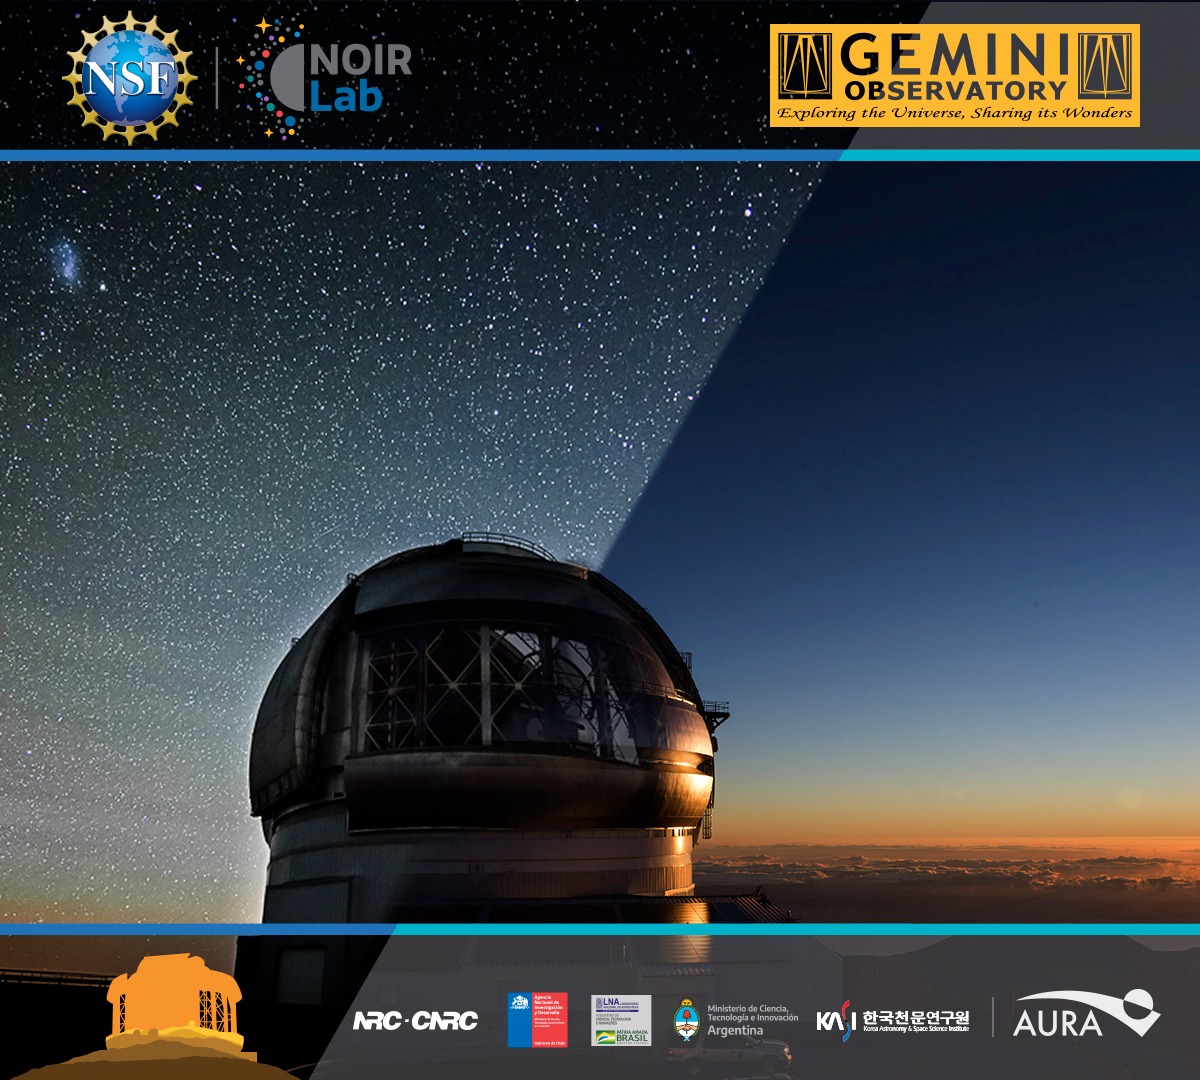 El Observatorio Gemini invita a su comunidad a proponer investigaciones científicas para el semestre 2023A, del 1 de febrero de 2023 al 31 de julio de 2023. Para obtener más detalles, visite: gemini.edu/observing/phas…

#NOIRLab #DiscoverTogether #GeminiObs